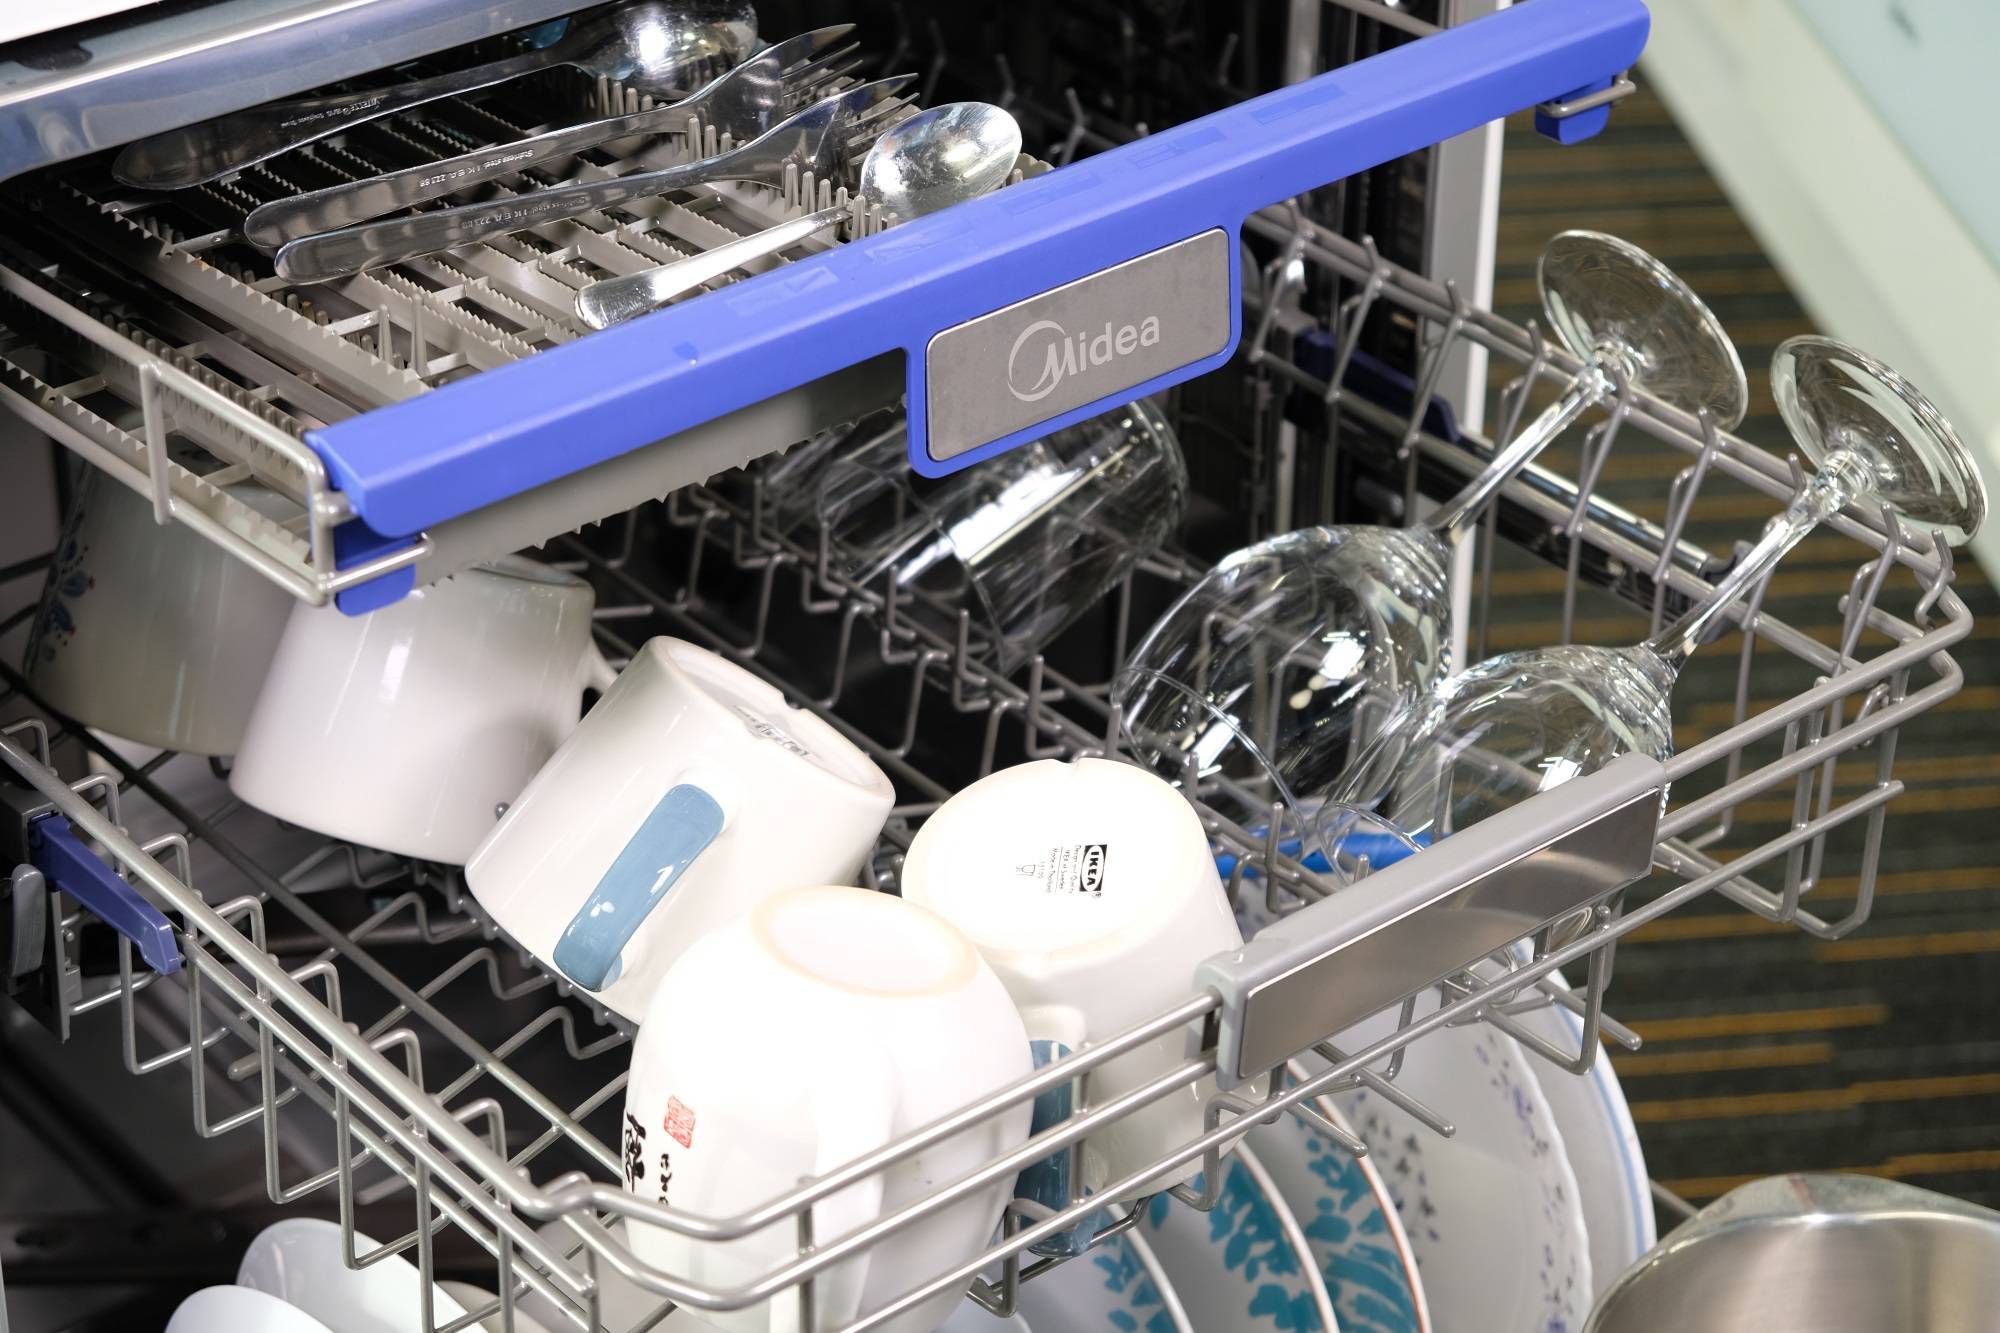 Как загружать посуду в посудомоечную машину правильно: инструкция, советы, рекомендации